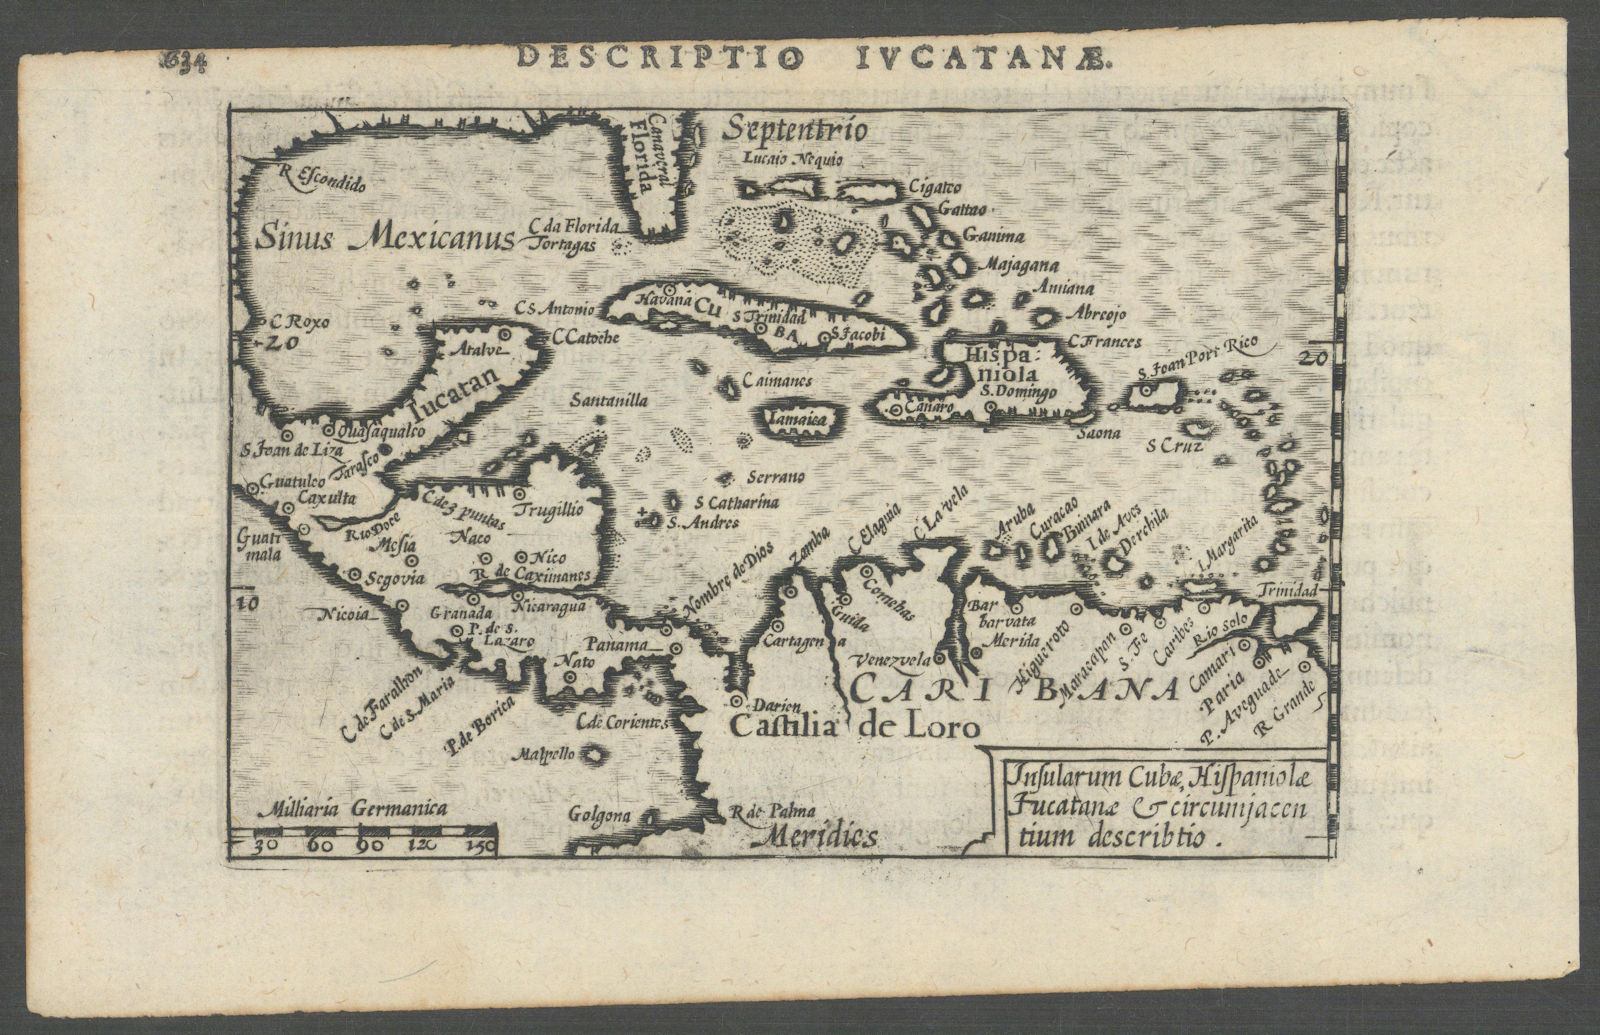 Insularum Cubae, Hispaniolae, Iucatanae… by Bertius/Langenes. Caribbean 1603 map